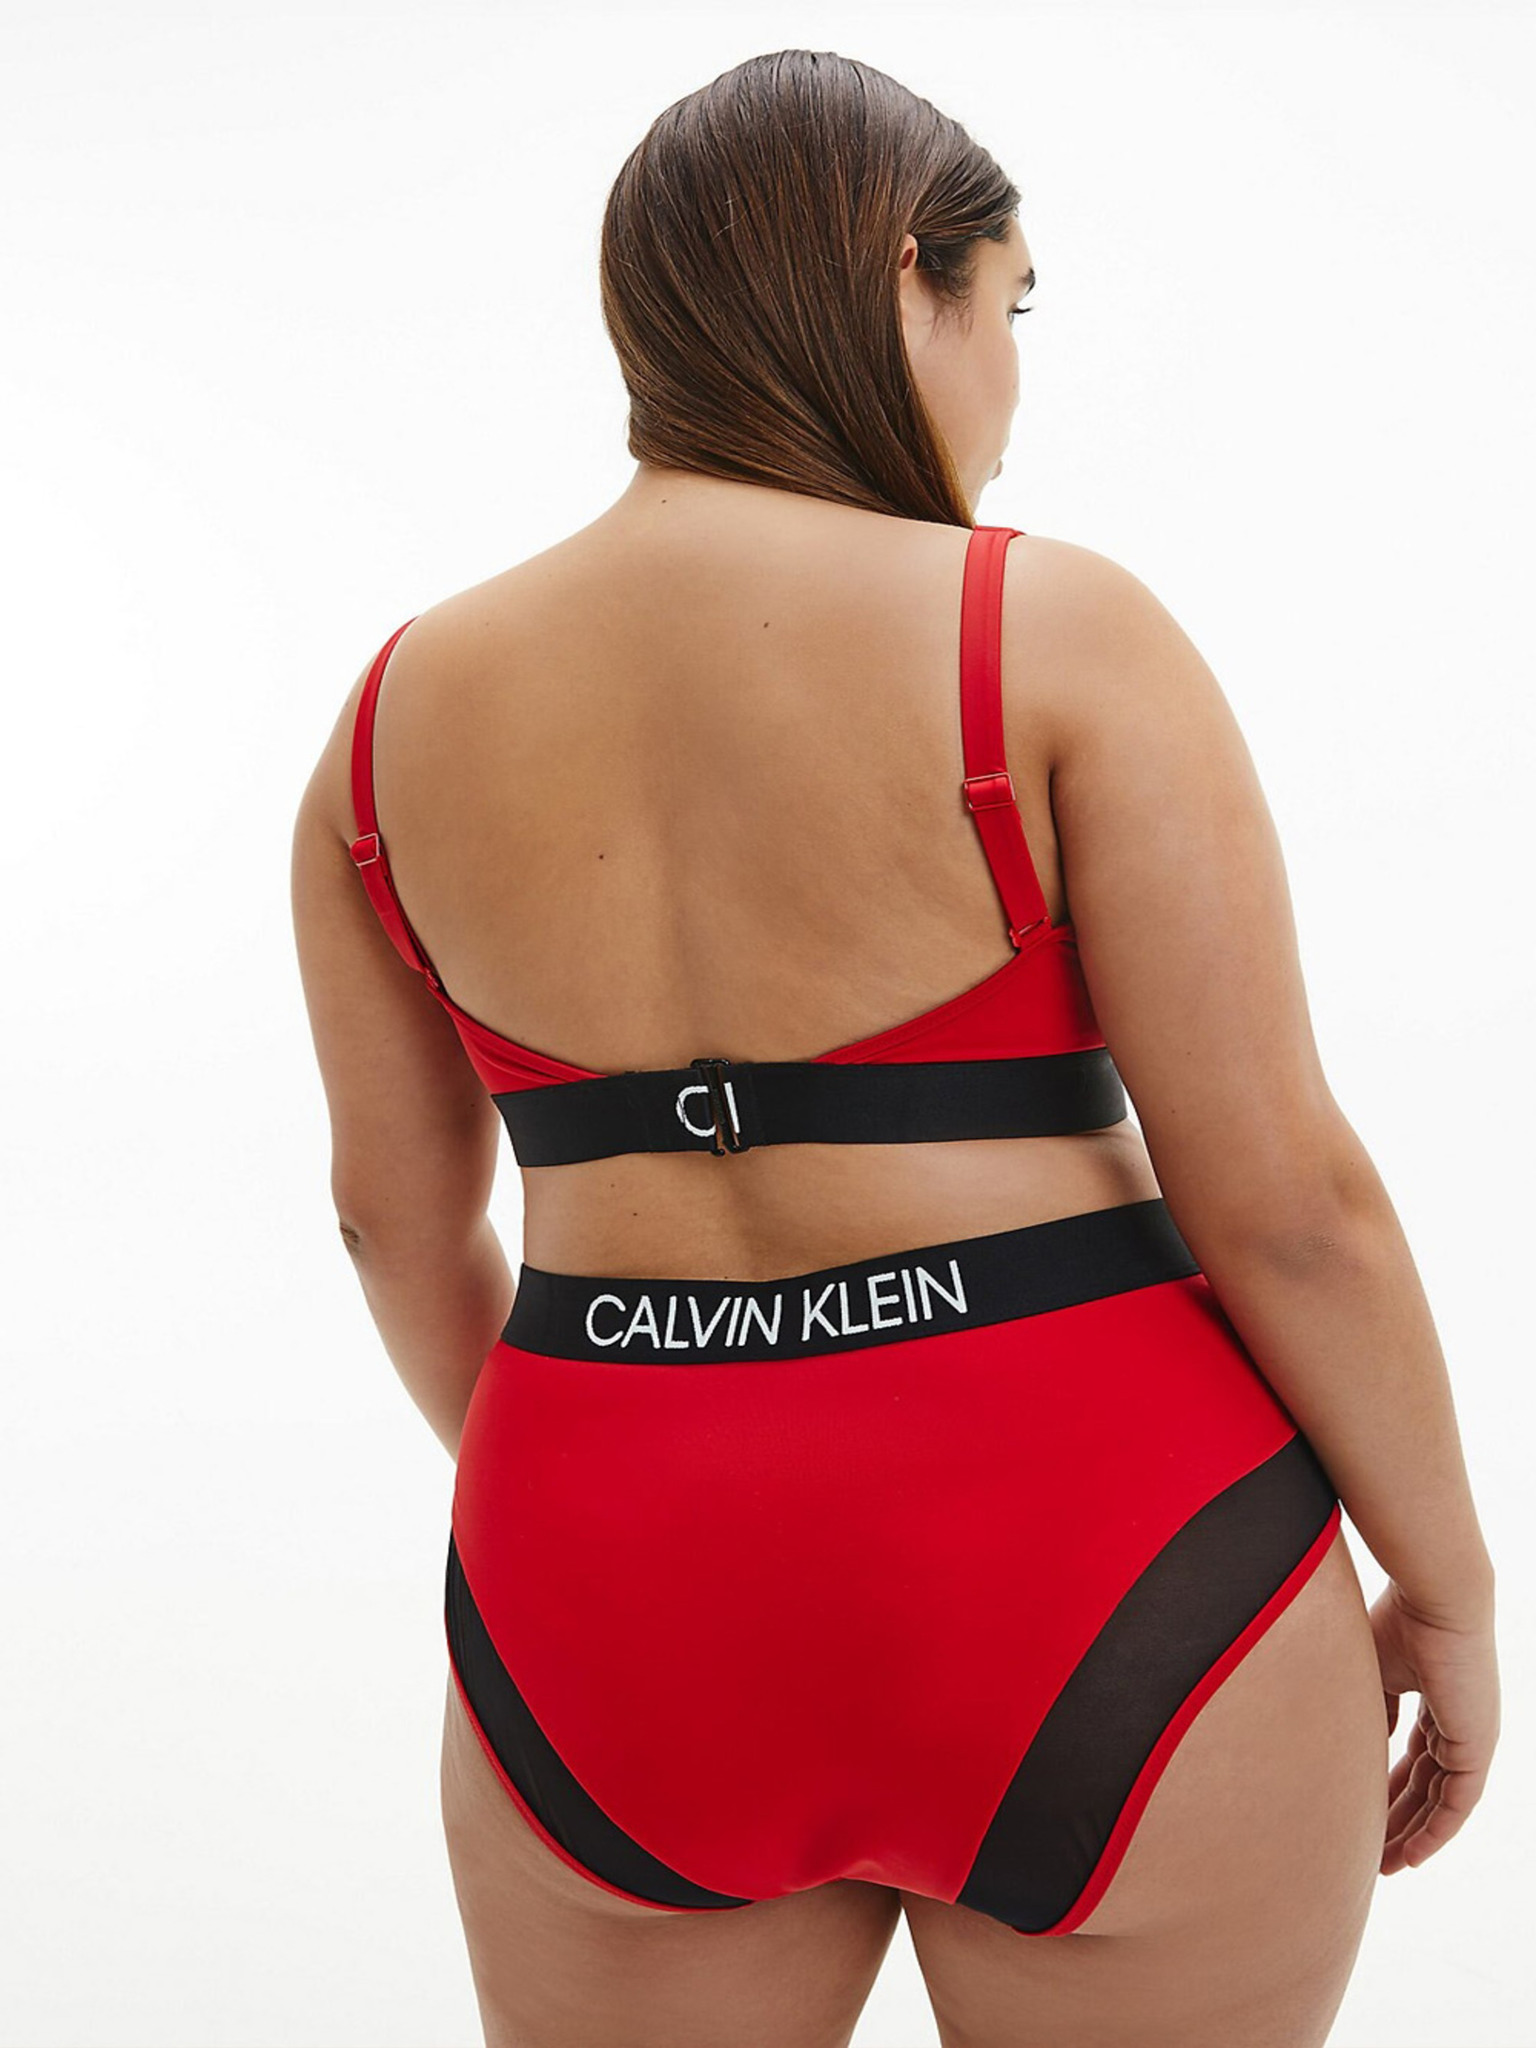 Calvin Klein Underwear - High Waist Bikin Bikini bottom 